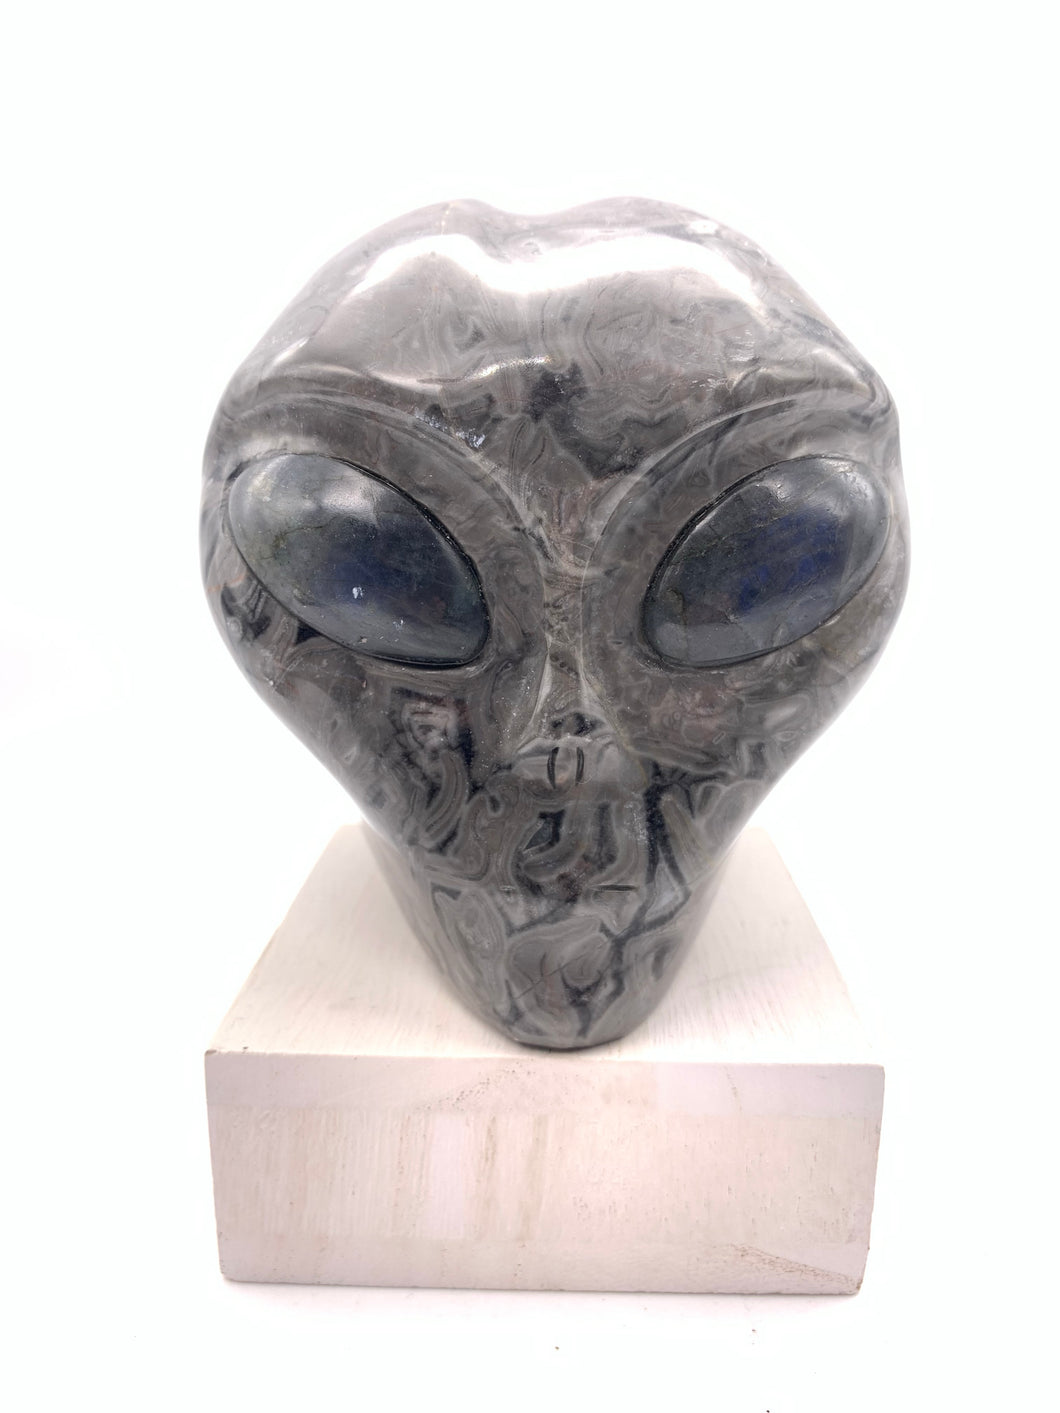 Jasper Alien Skull